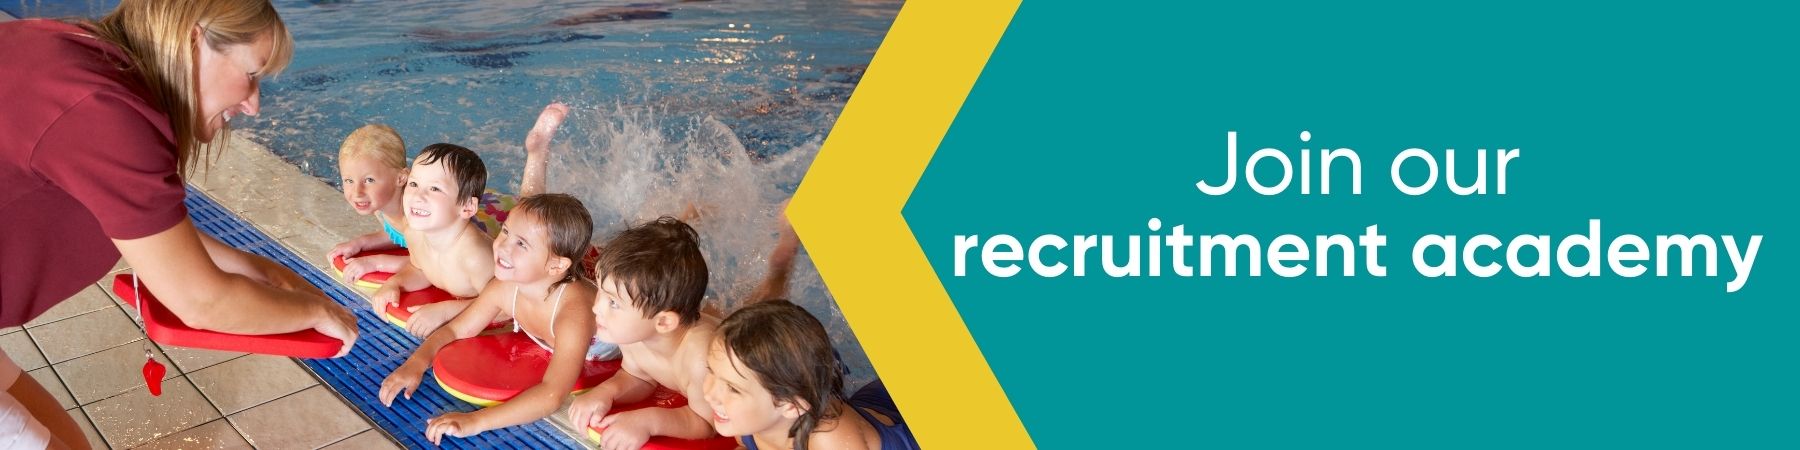 Recruitment academy website banner